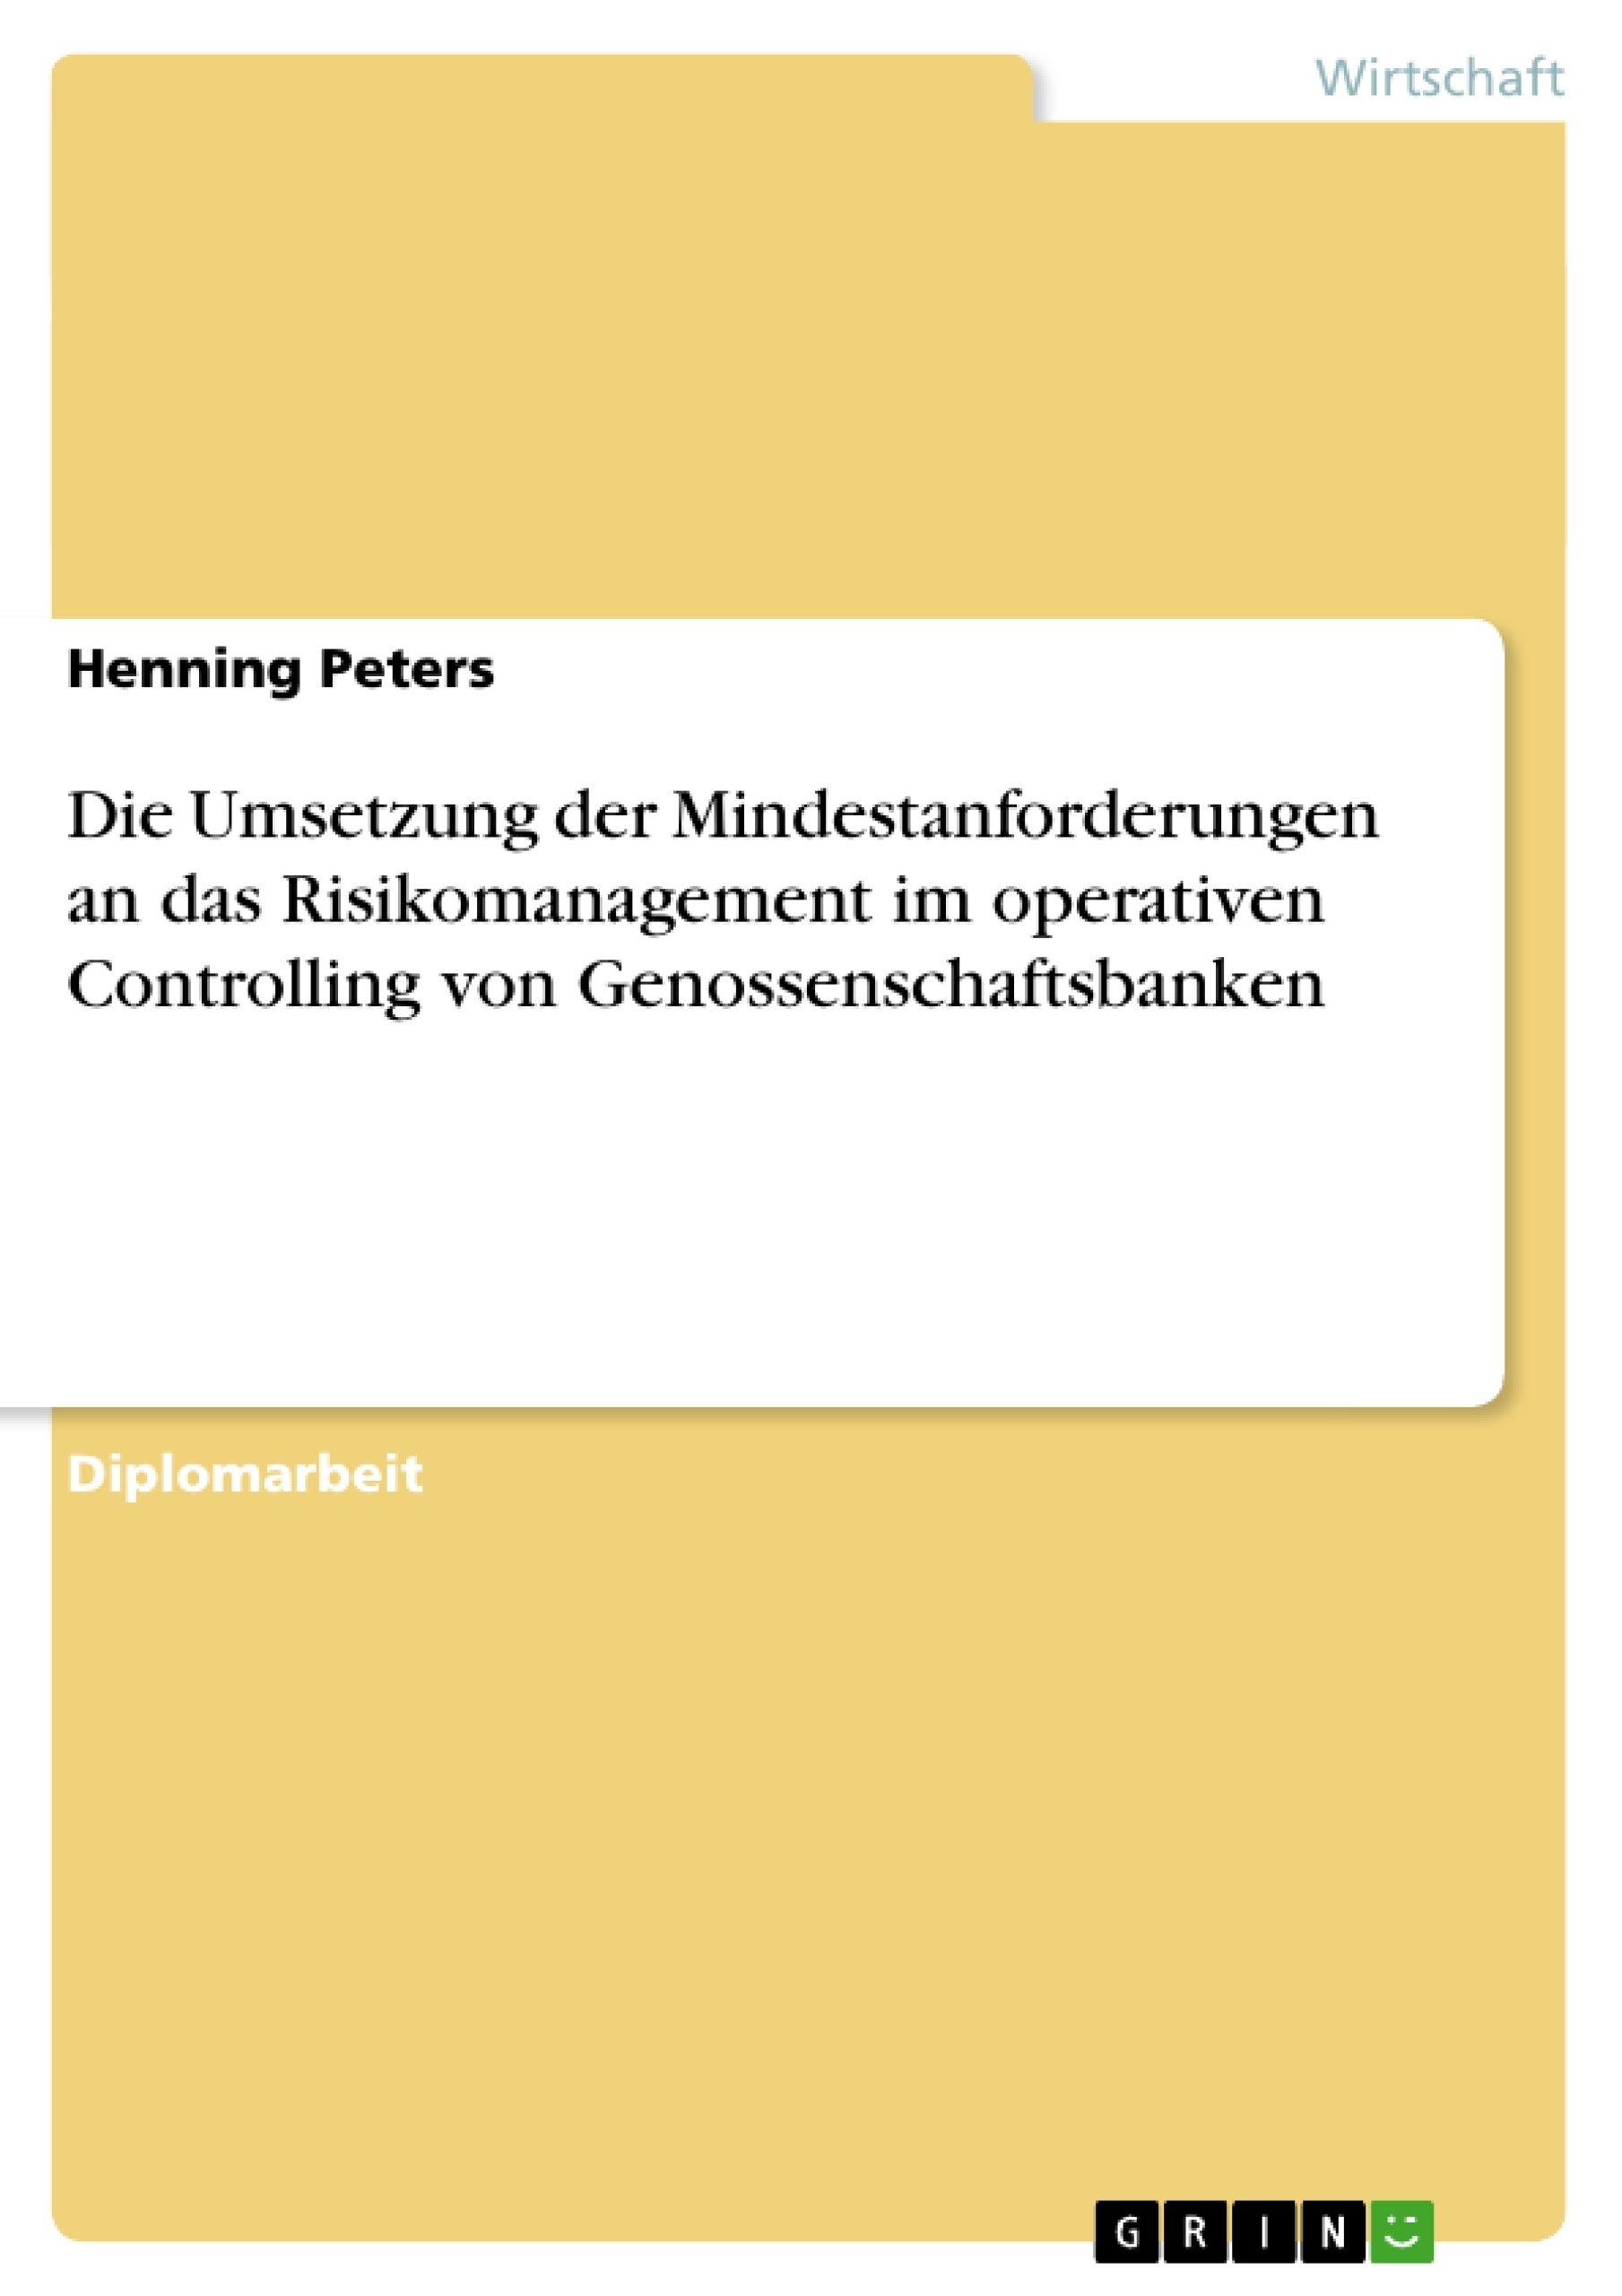 Titre: Die Umsetzung der Mindestanforderungen an das Risikomanagement im operativen Controlling von Genossenschaftsbanken